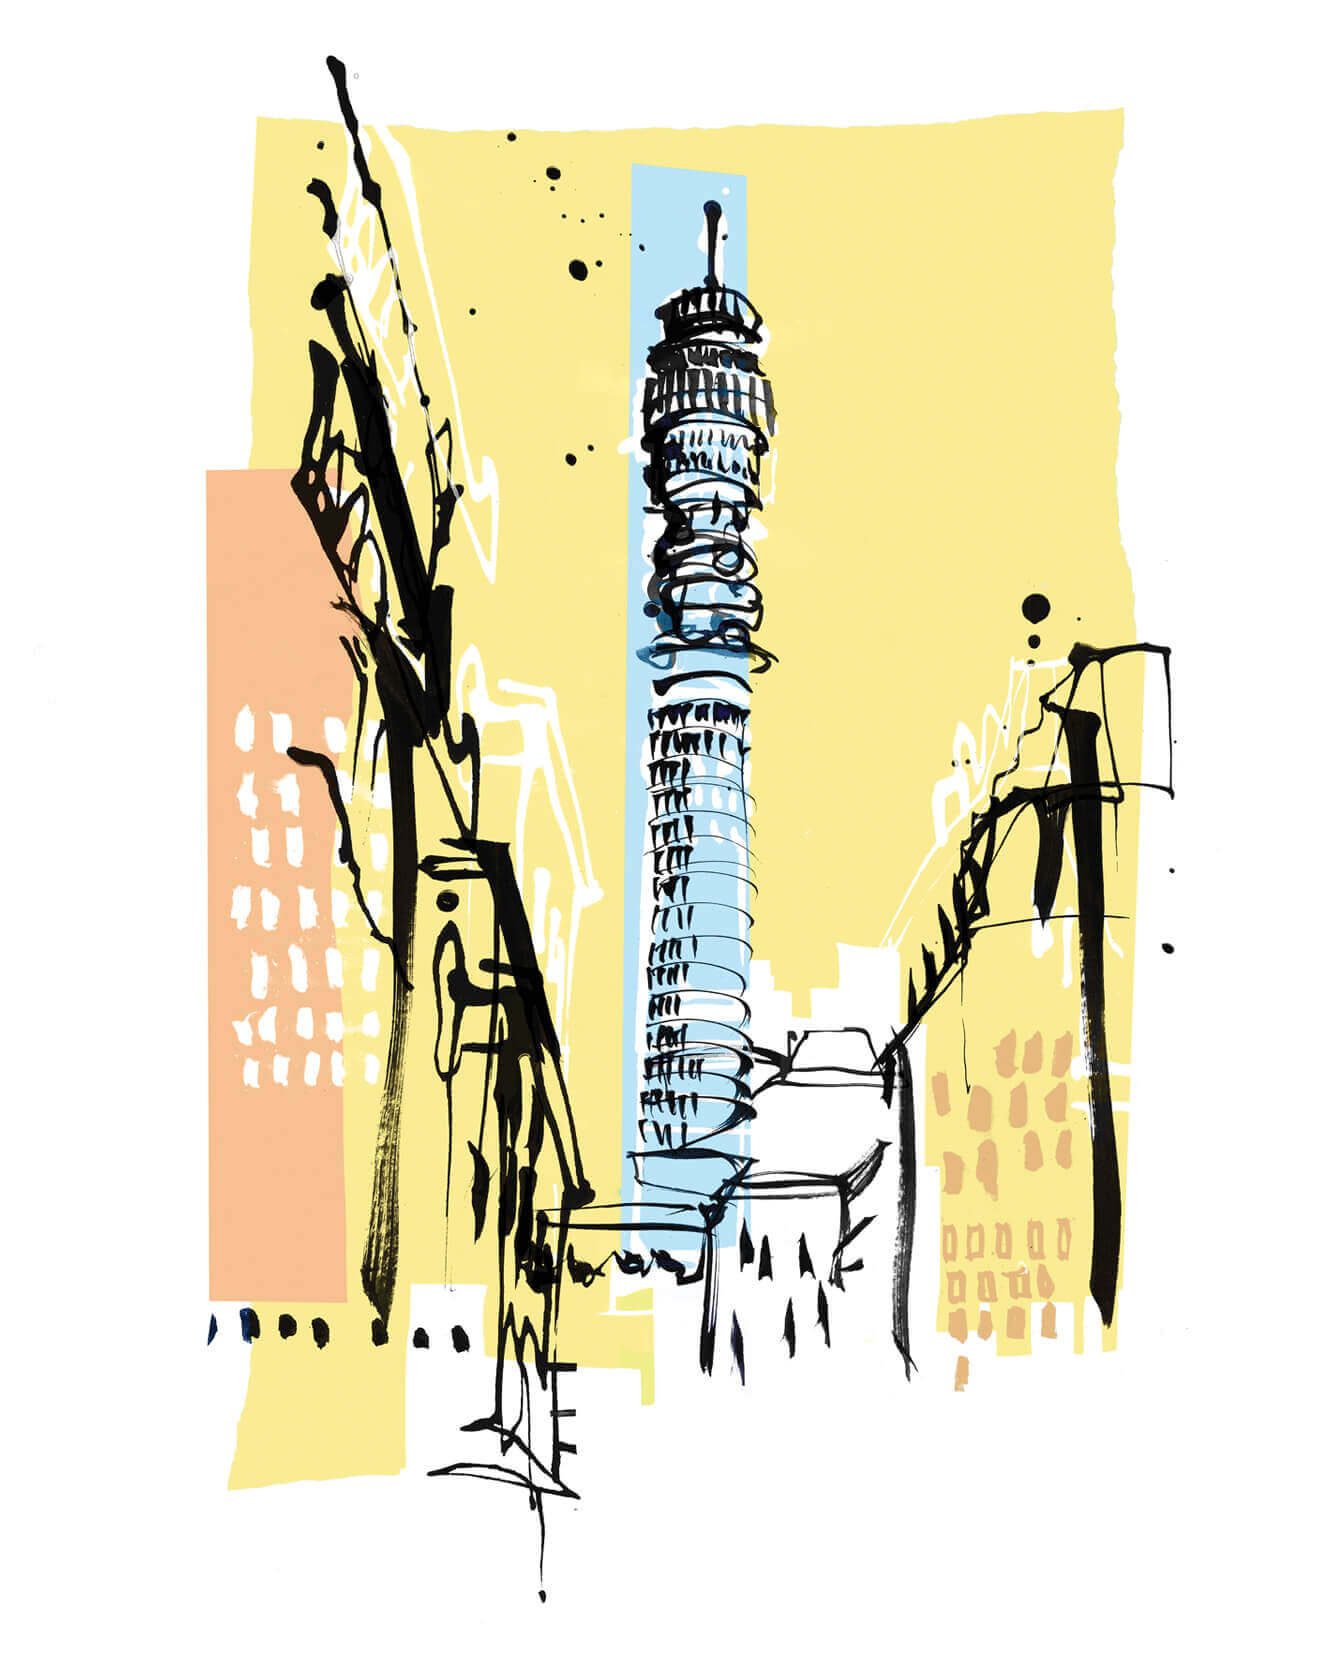 Caroline Tomlinson Illustrating London BT tower